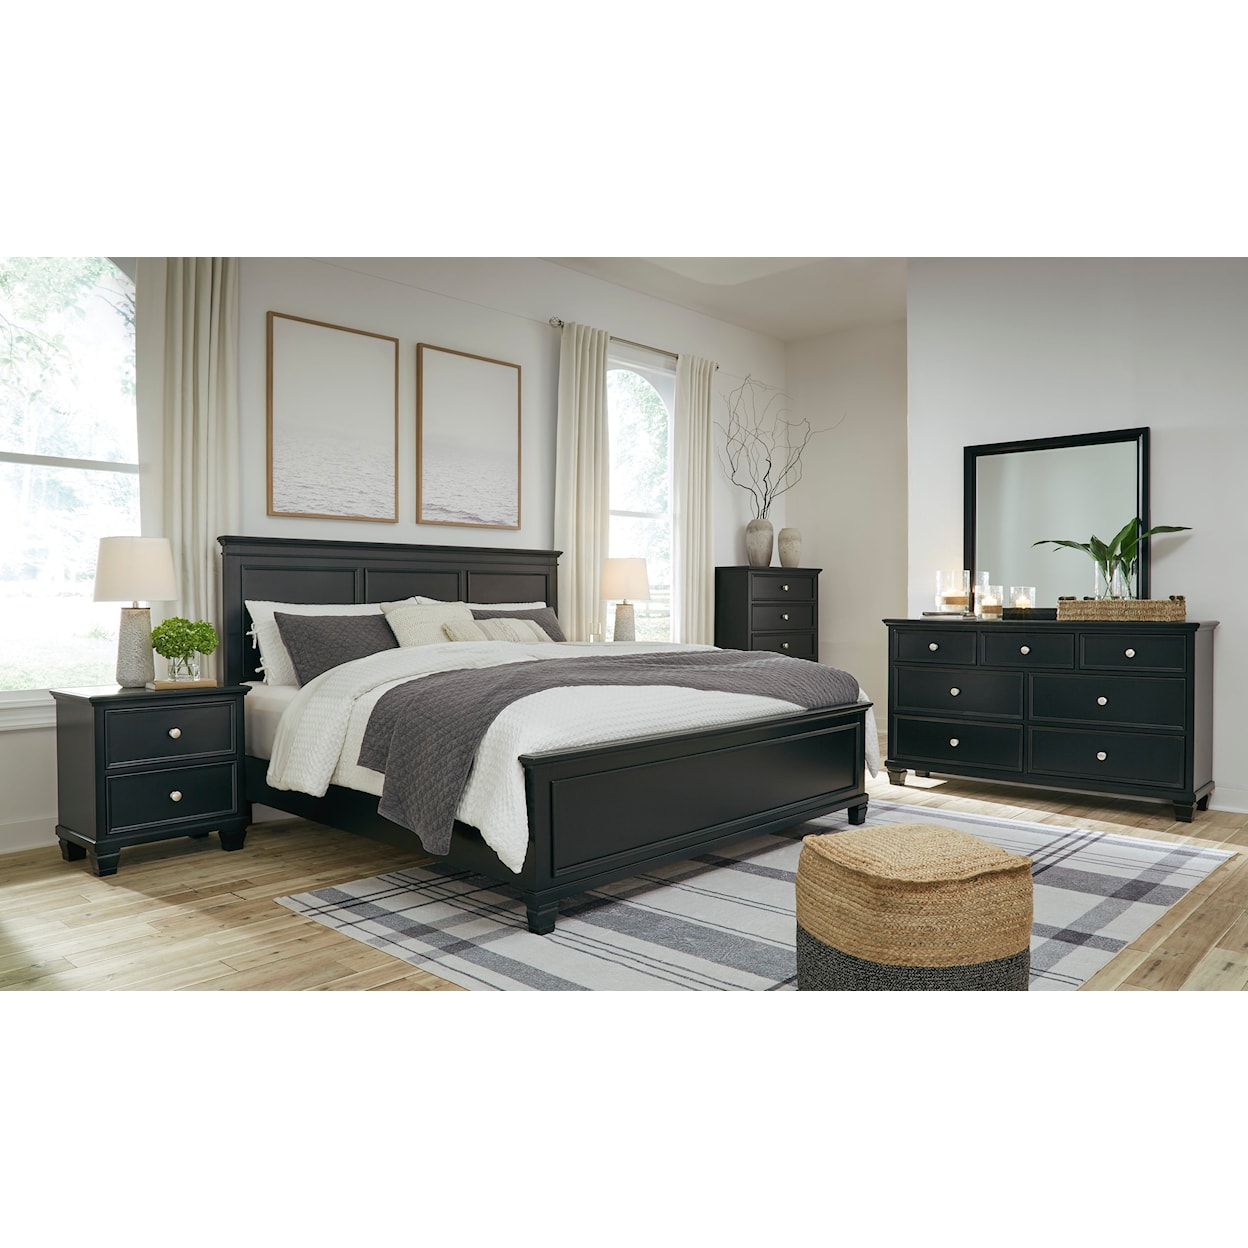 Benchcraft Lanolee 5-Piece California King Bedroom Set